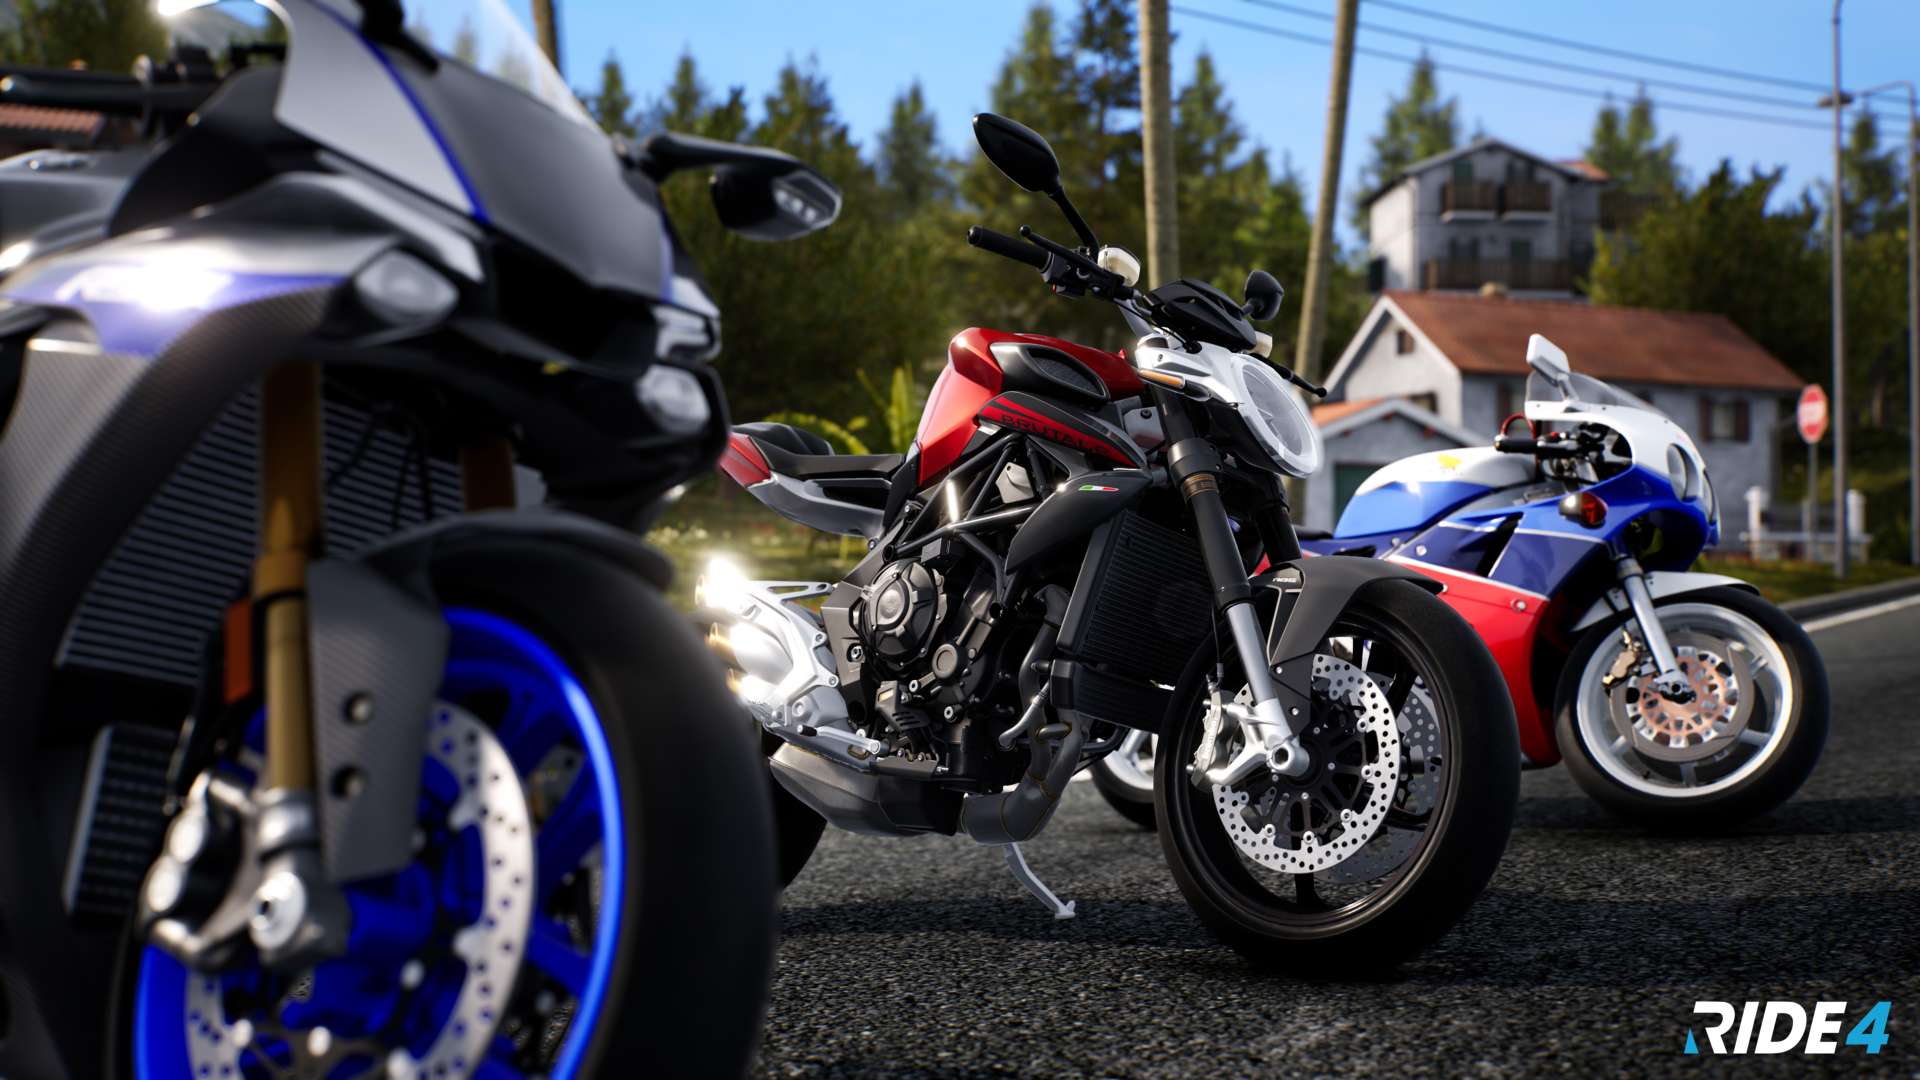 Ride 4 Next gen Screenshot 18 - RIDE 4 estará en PlayStation 5 y Xbox Series X